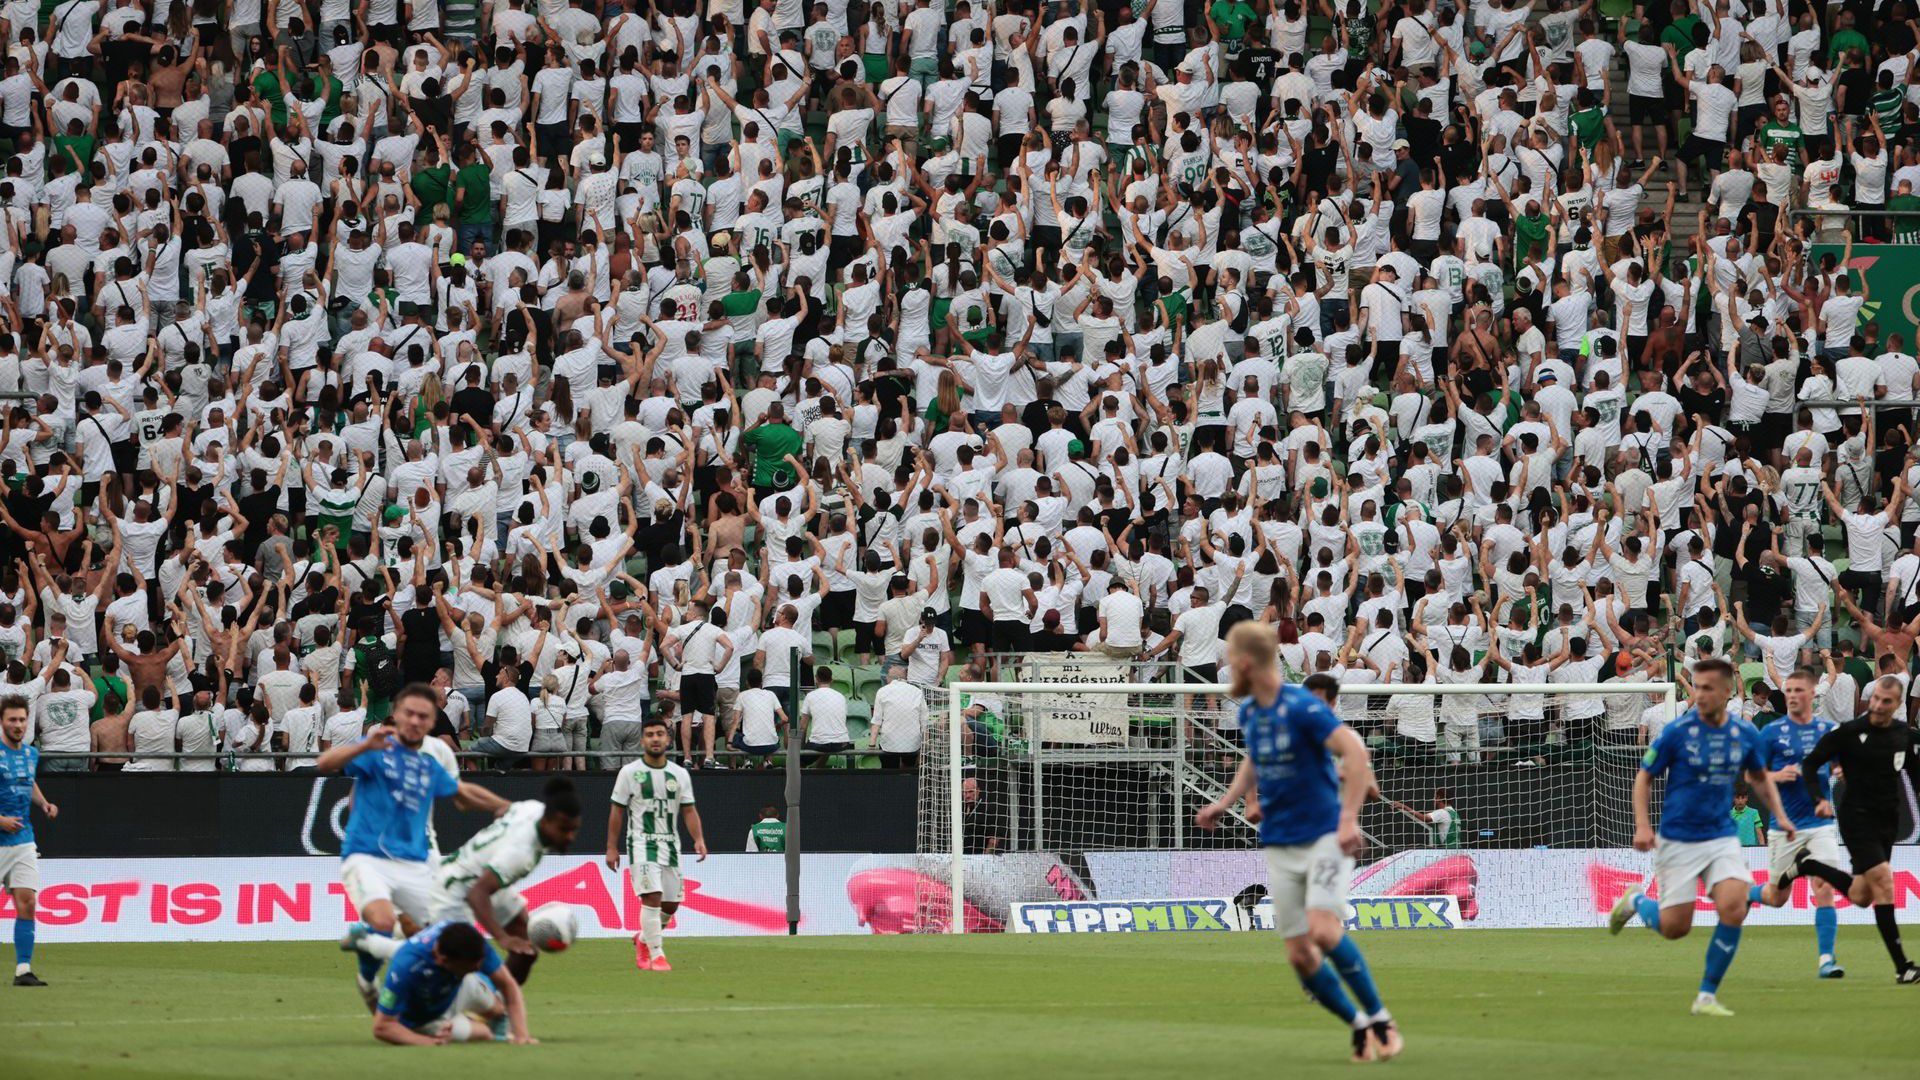 Feröeri fricska a Fradinak, de augusztusra csak a zöld-fehérek maradtak a nemzetközi kupában – A magyar futball 2023-as éve, 4. rész